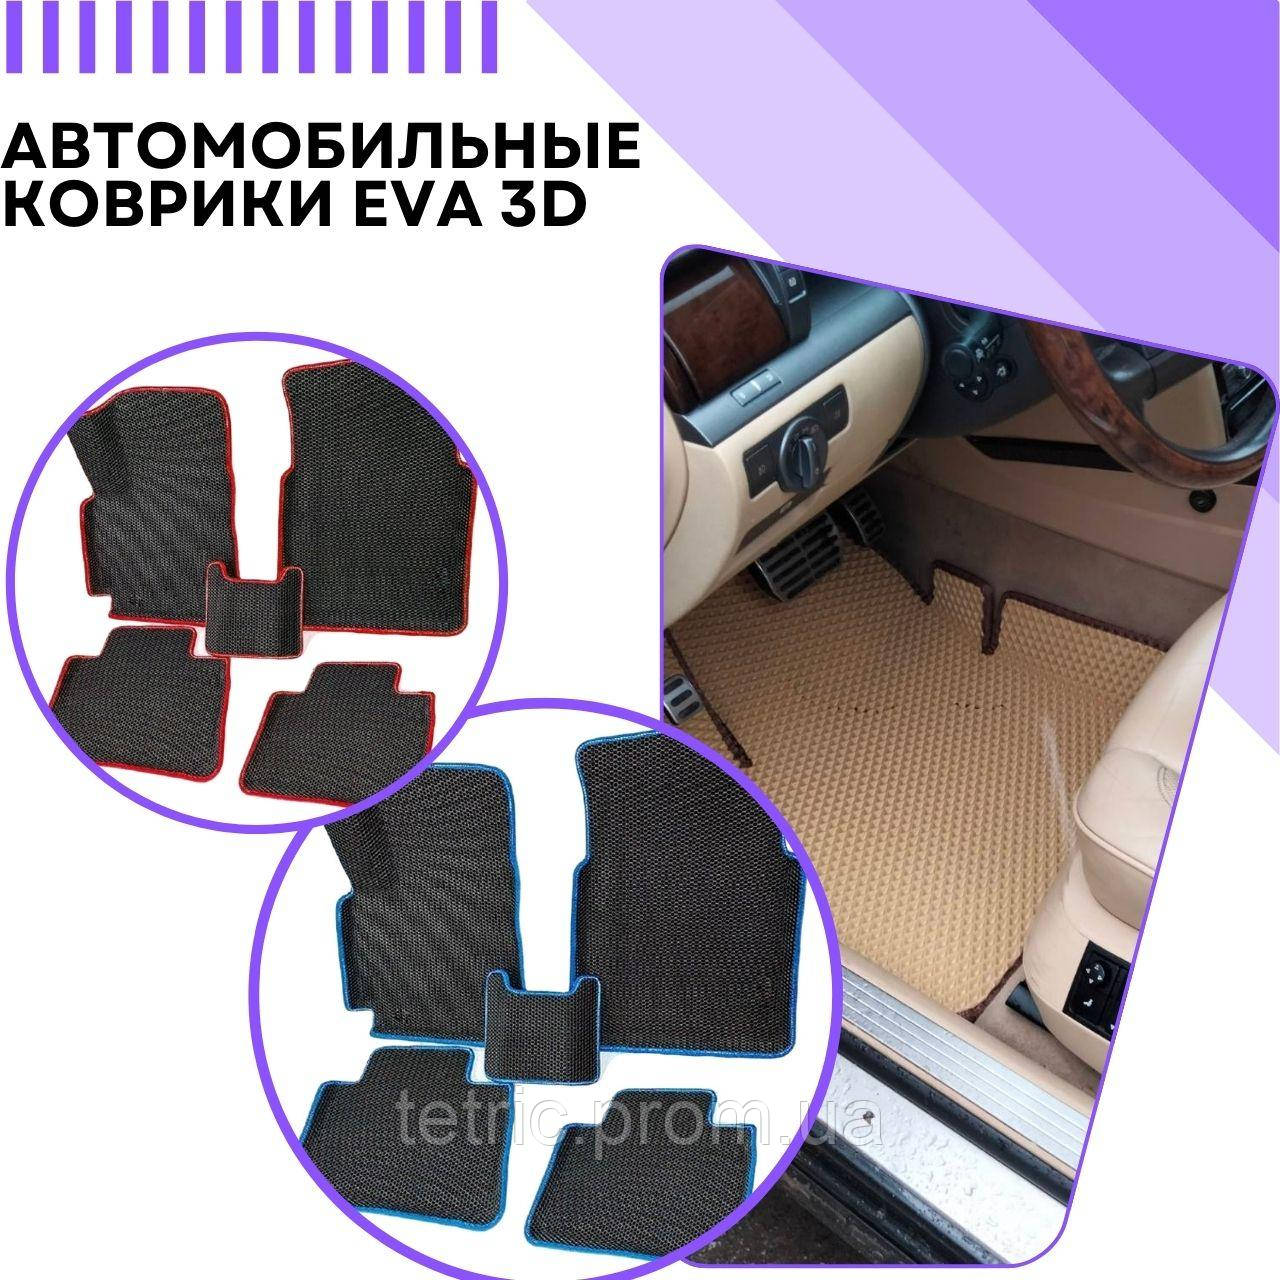 Автомобільні килимки EVA 3D на Audi A3 8P Ауди Килими в салон ева Ево Килимок в салон